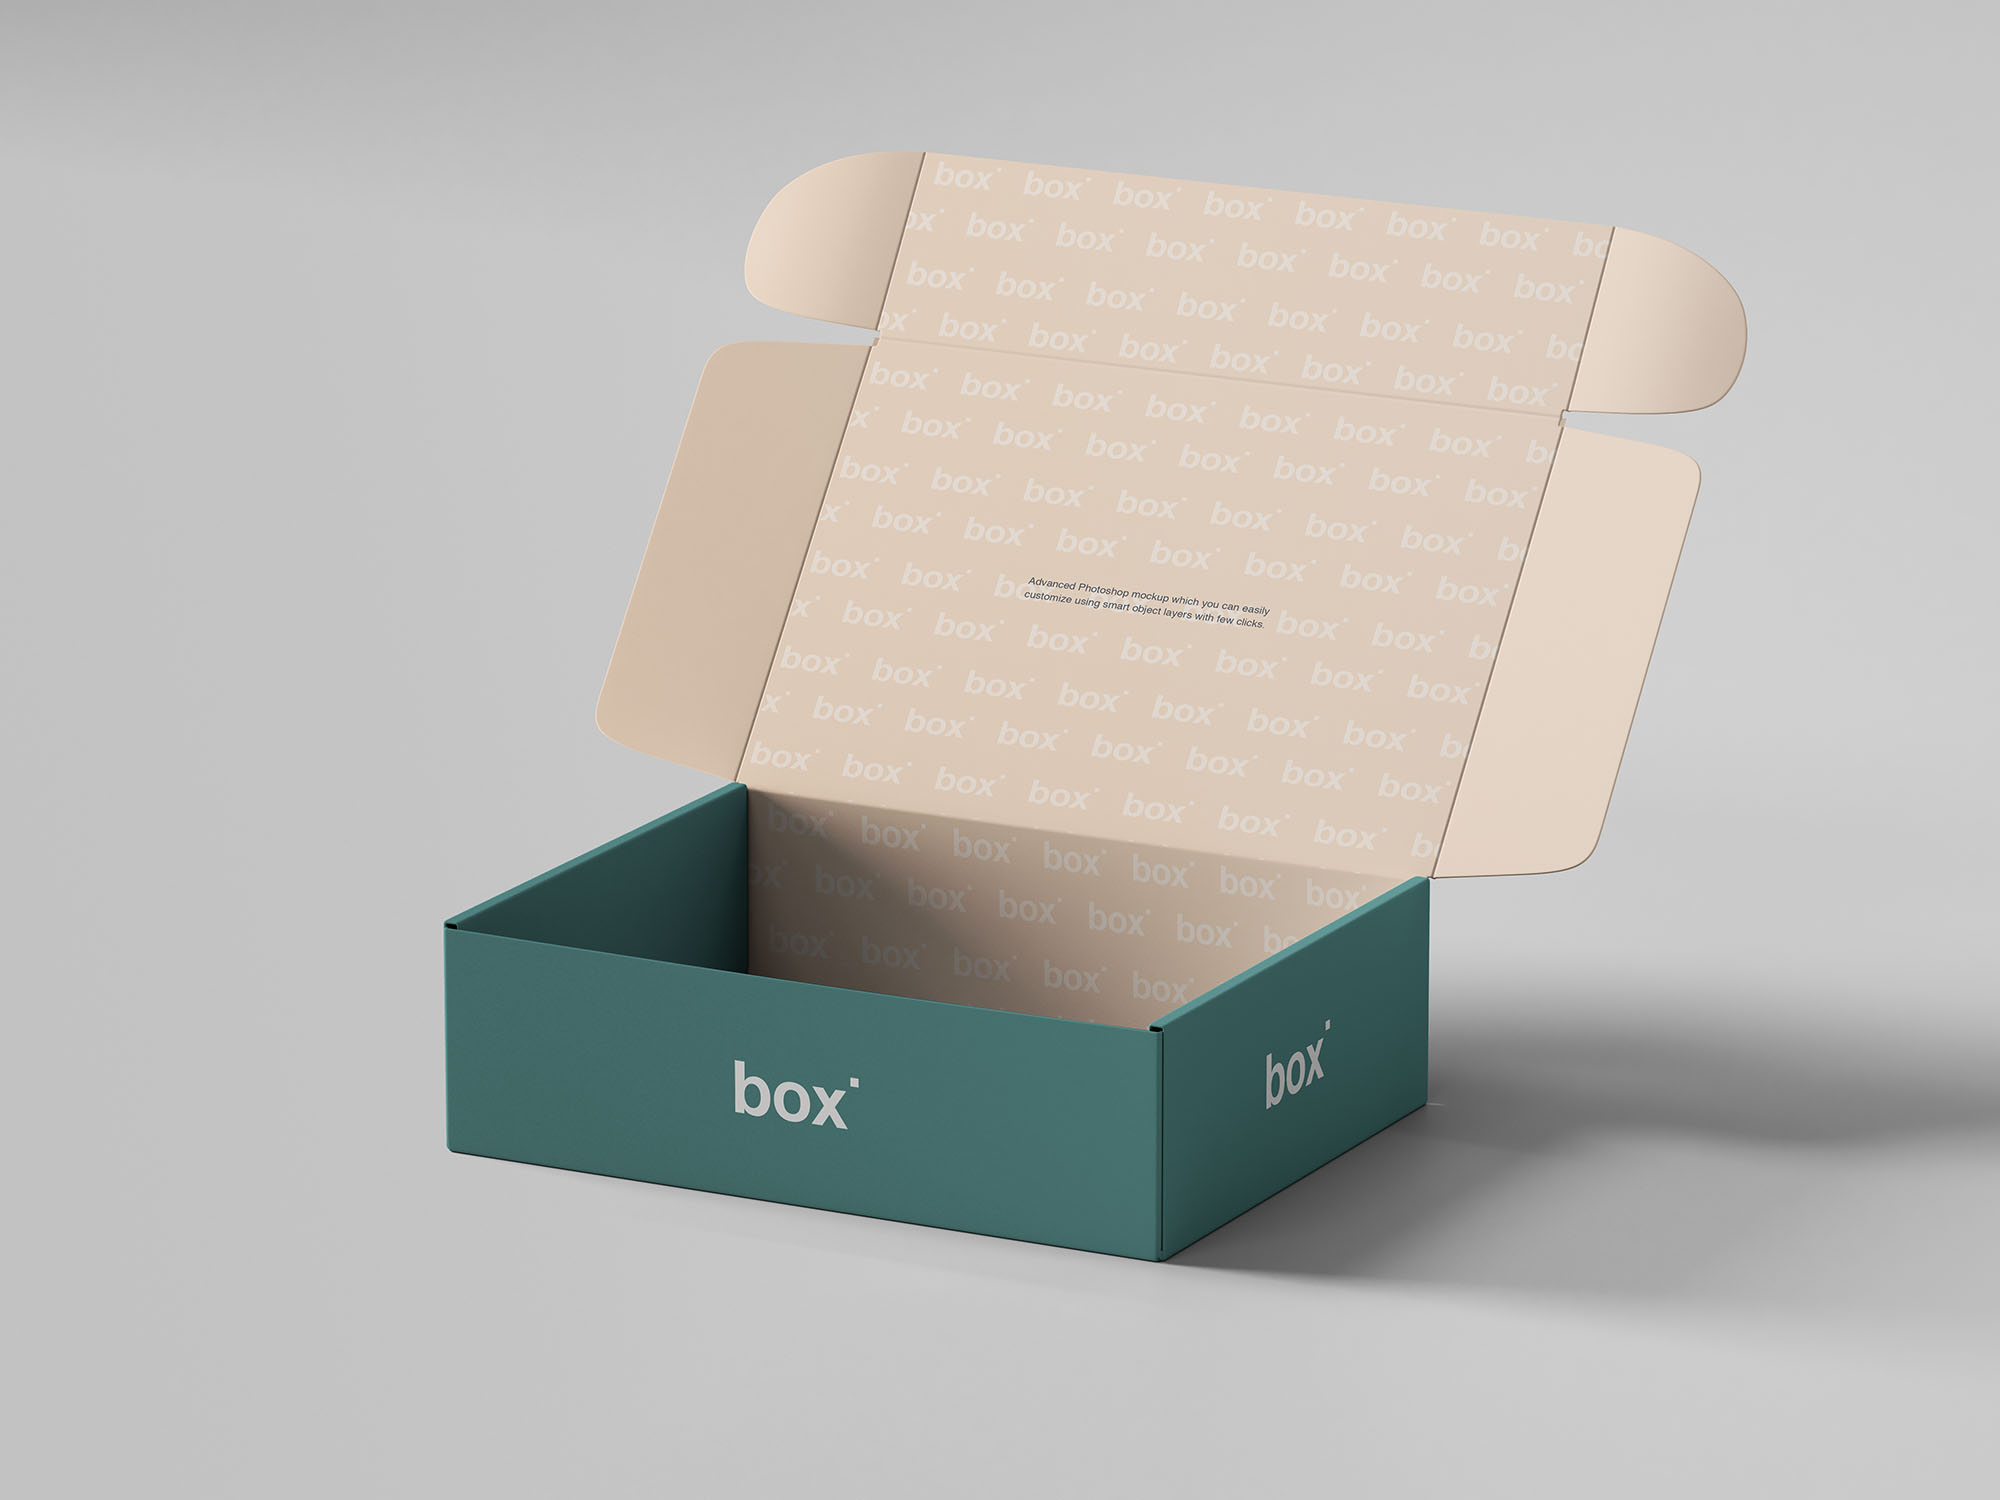 鞋盒包装设计展示第一素材精选模板素材 Pinch Lock Box Mockup插图